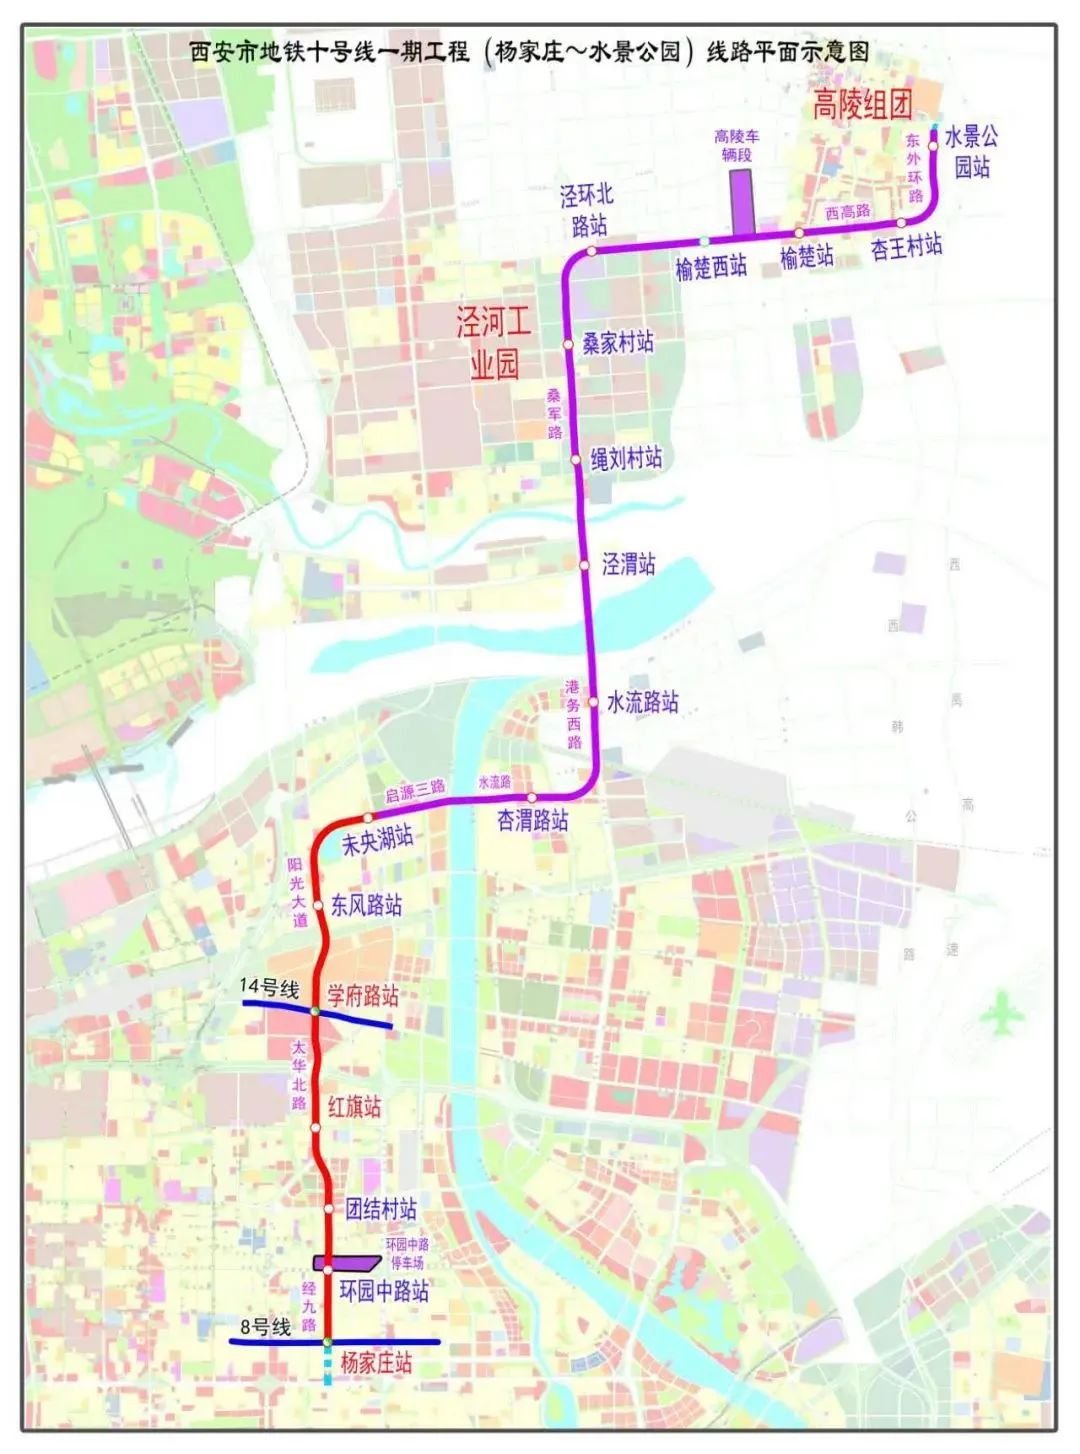 西安地铁规划图最新版_西安地铁7号线 - 随意云